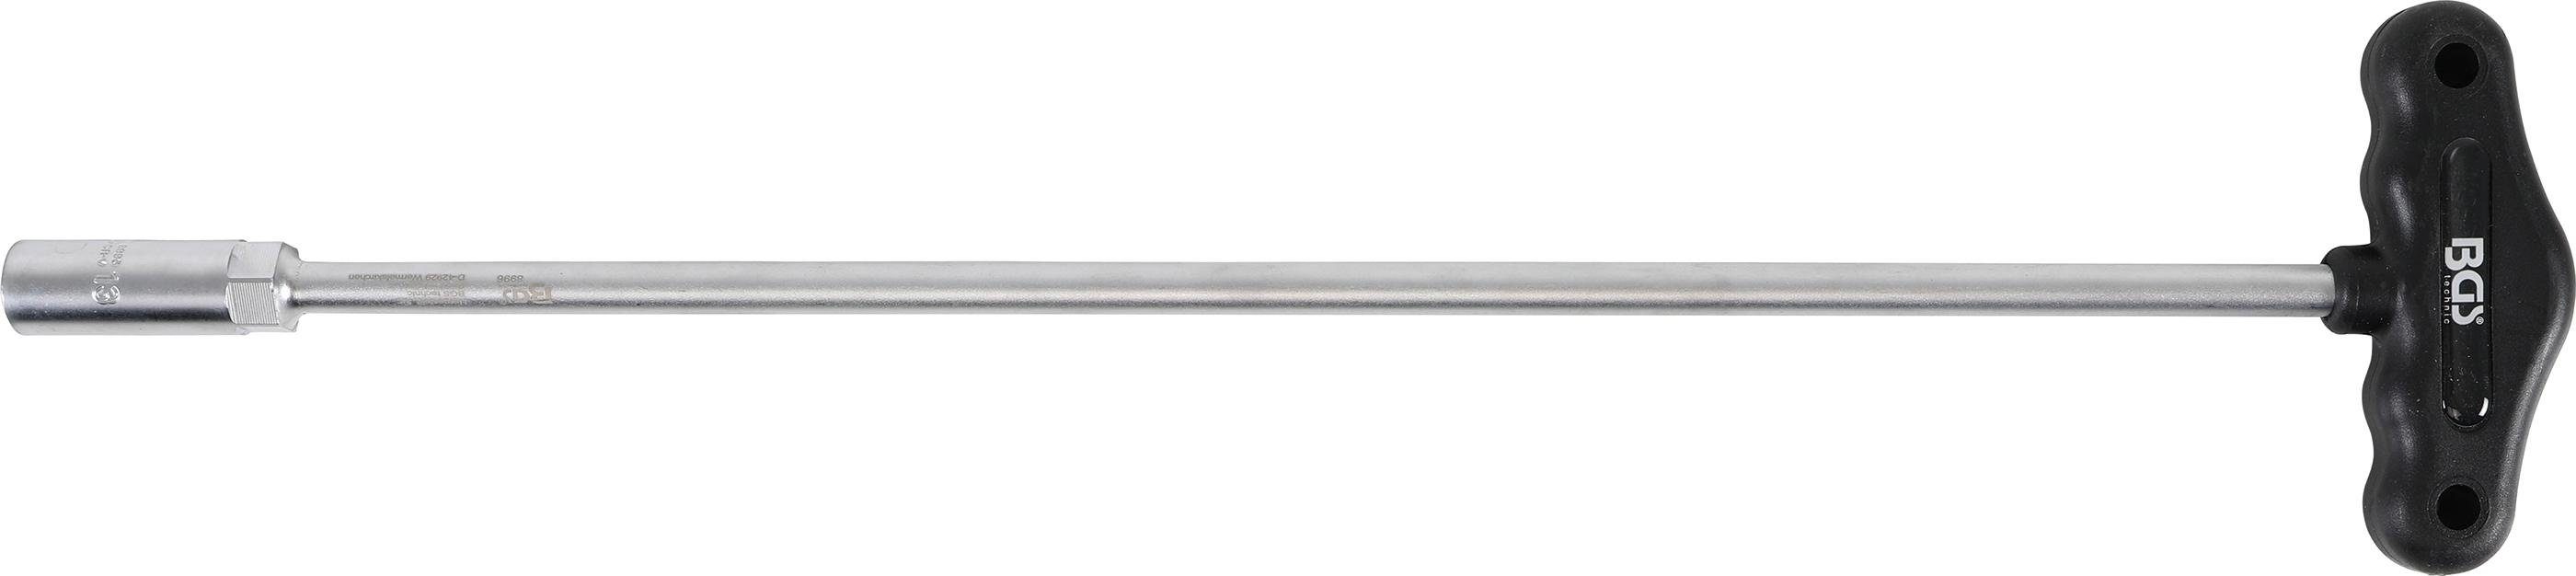 BGS technic Steckschlüssel Steckschlüssel mit T-Griff, Sechskant, Länge 430 mm, SW 13 mm